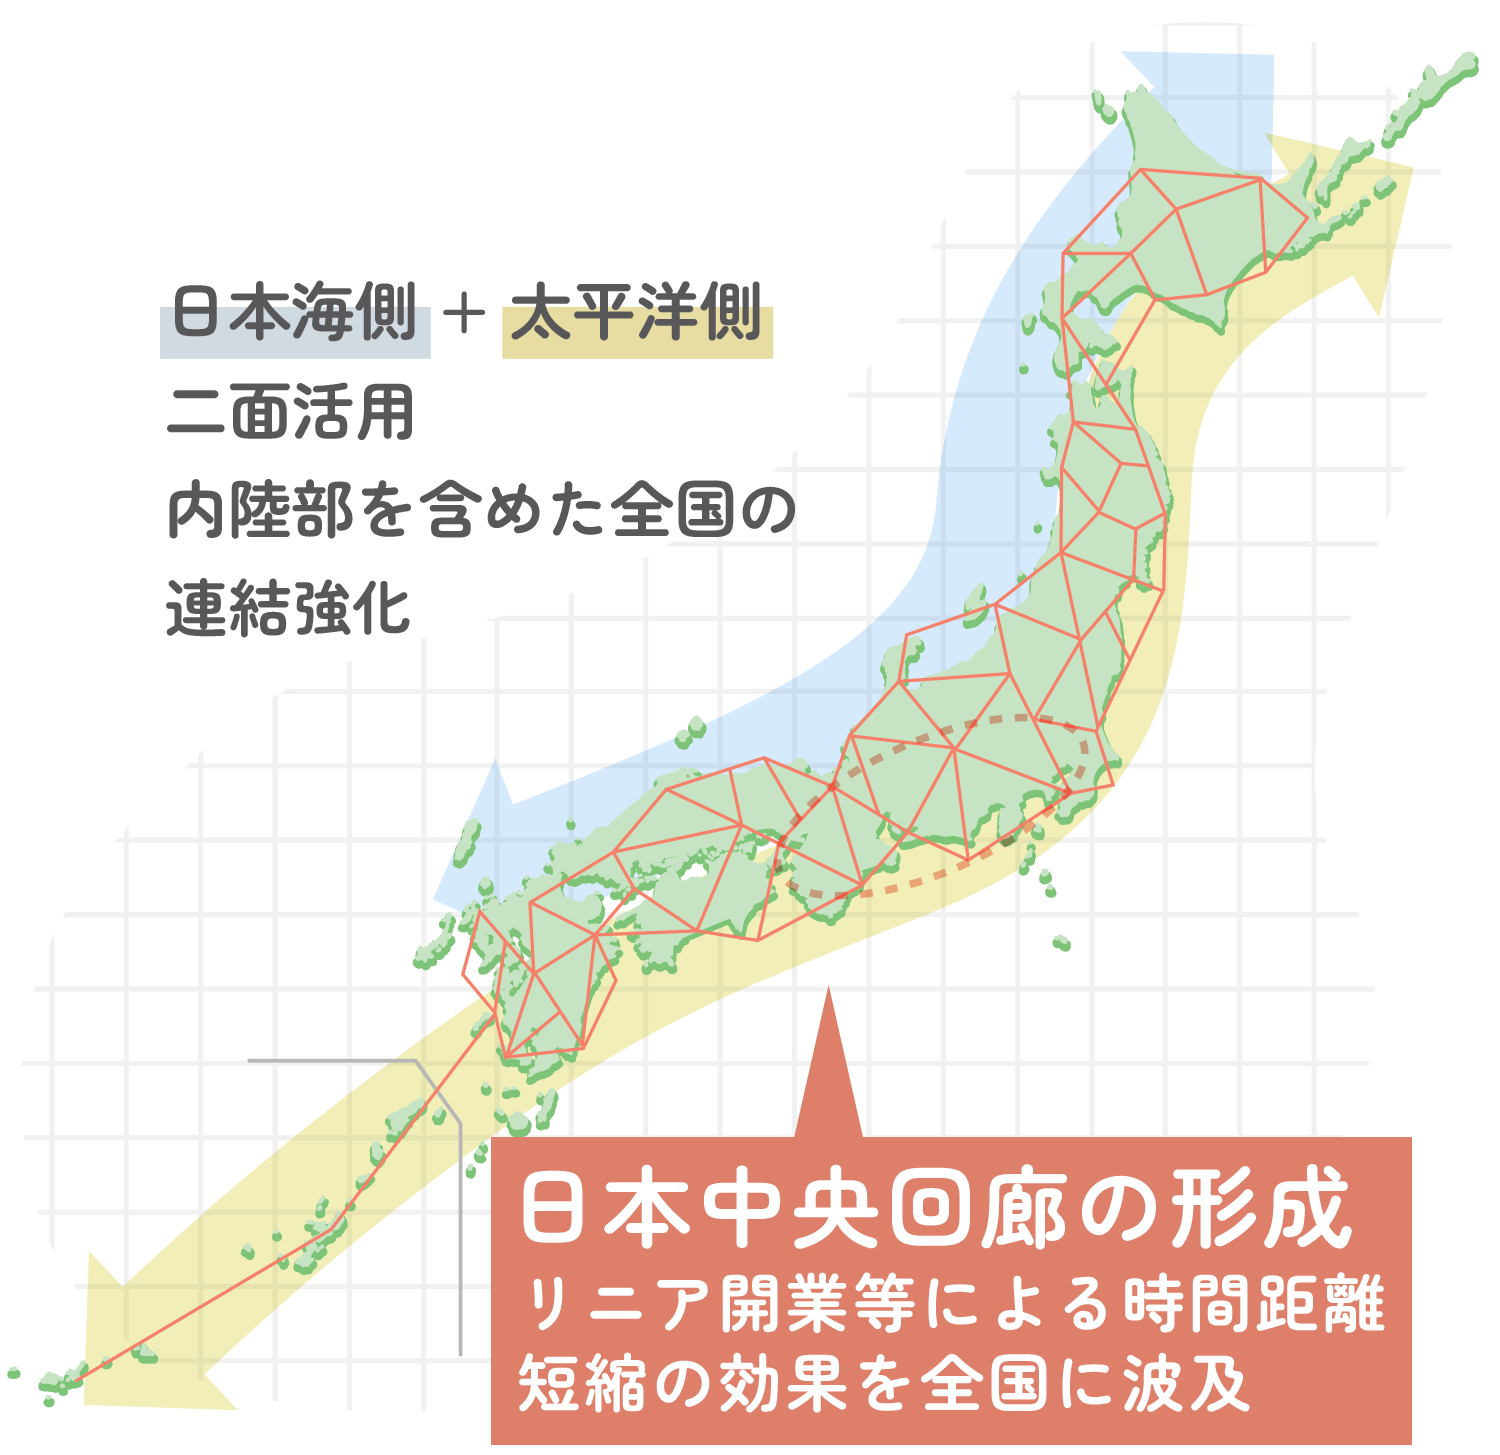 日本海側 + 太平洋側 二面活用 内陸部を含めた全国の連結強化 日本中央回廊の形成 リニア開業等による時間距離短縮
                                            の効果を全国に波及